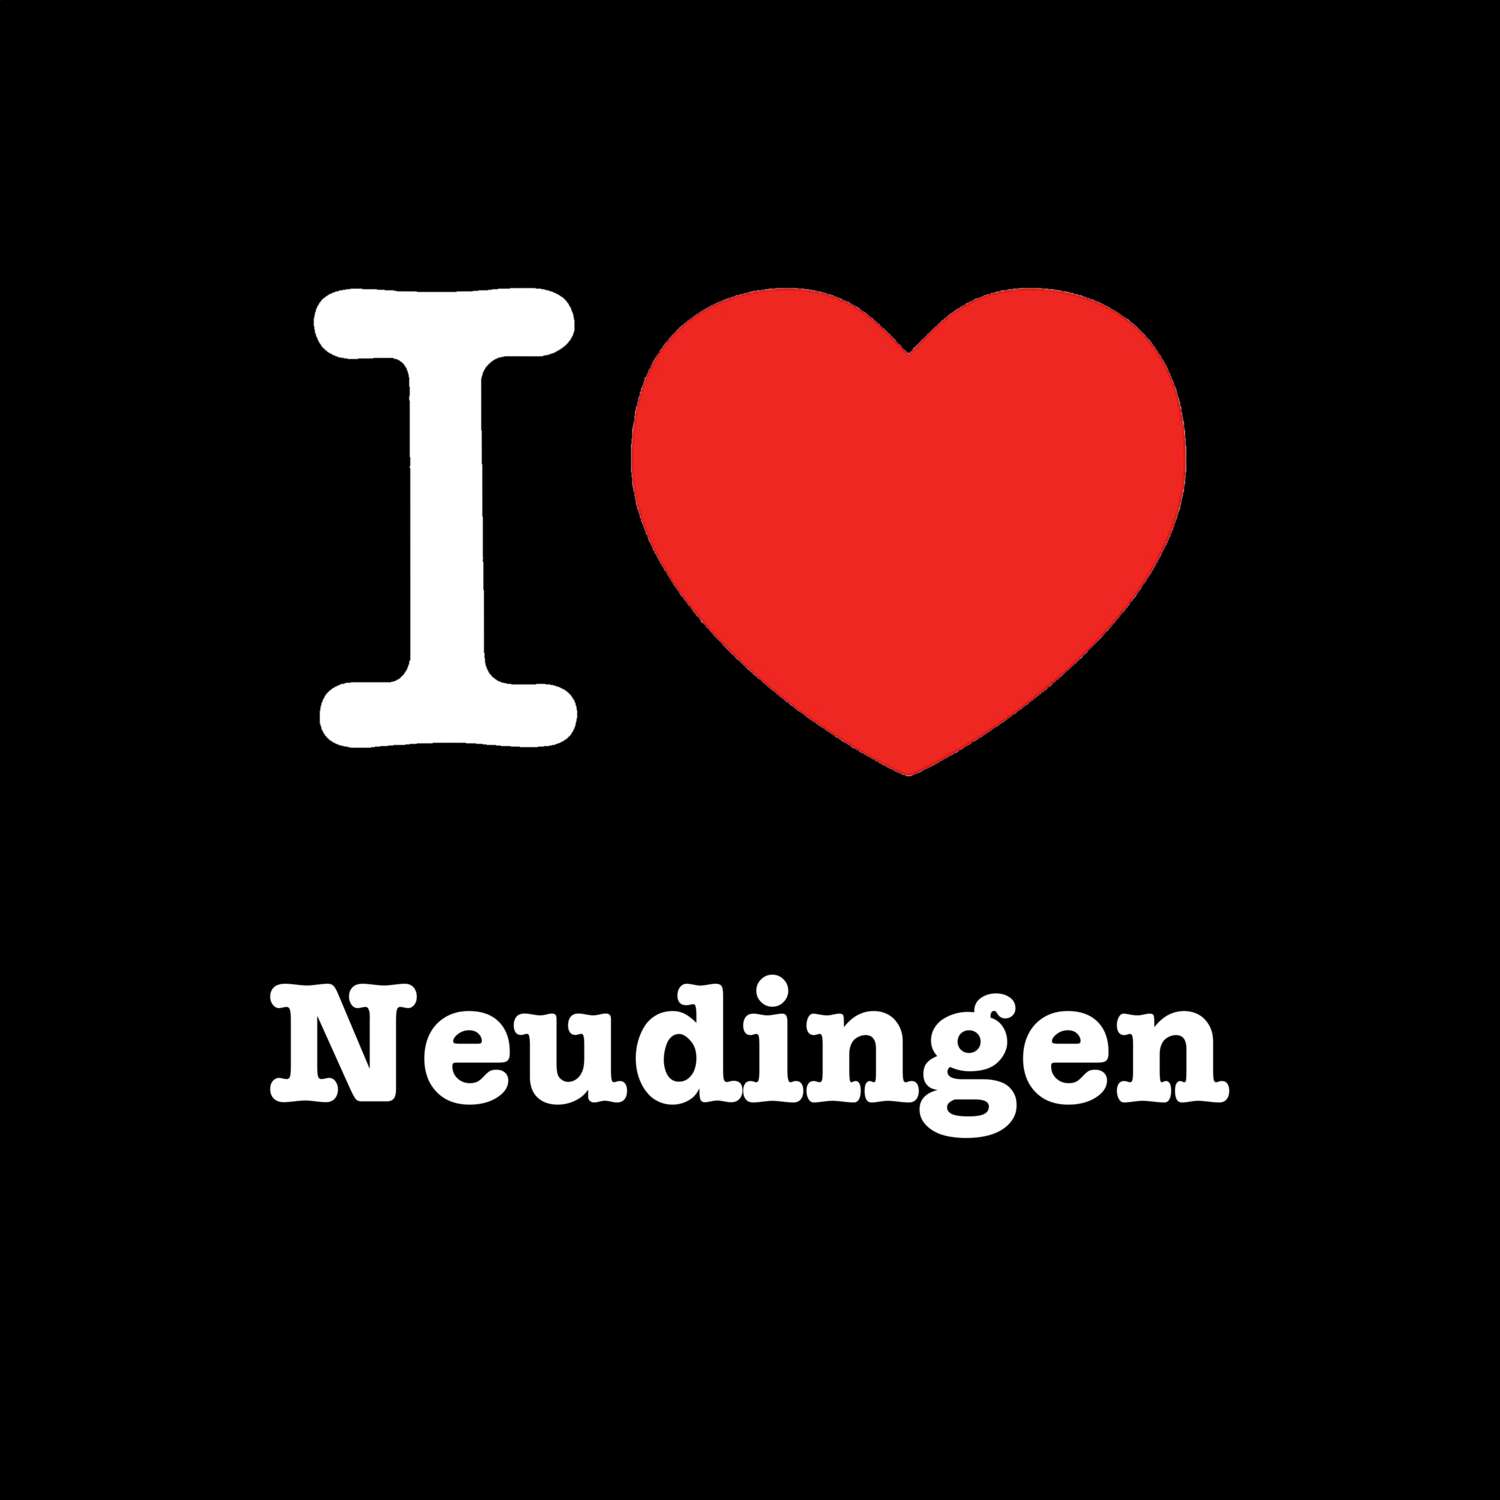 Neudingen T-Shirt »I love«